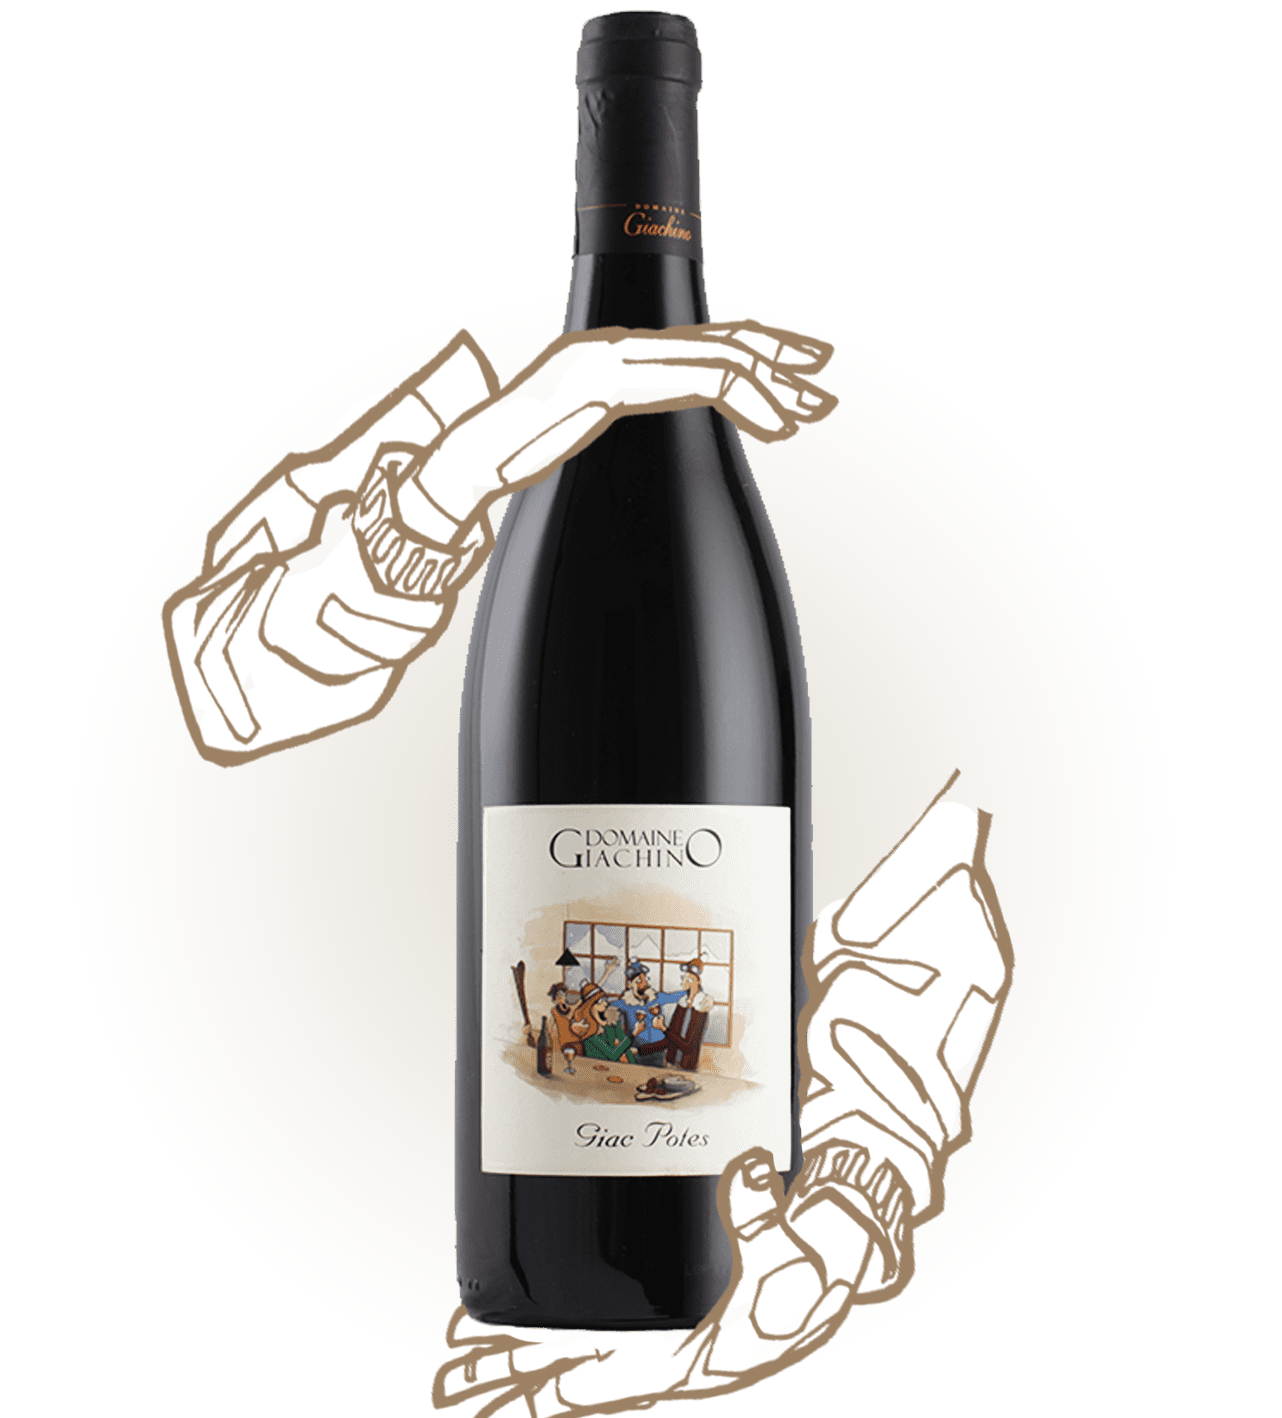 Giac pote est un vin naturel de savoie du domaine giachino